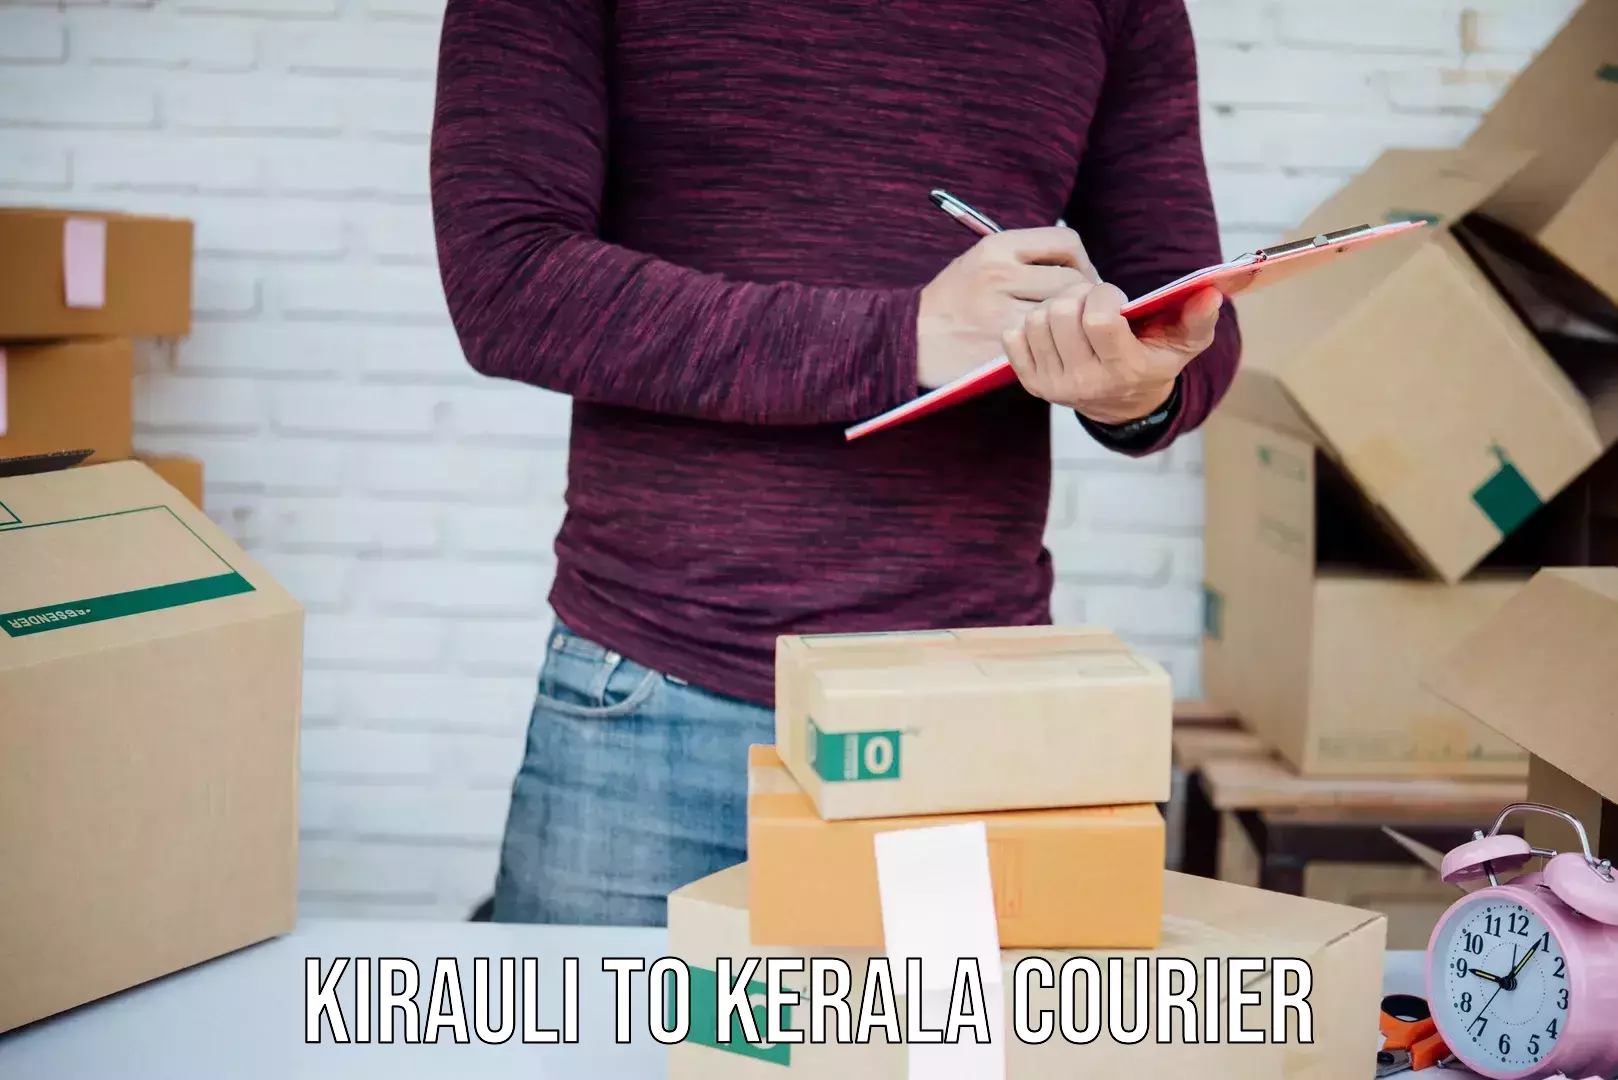 Cost-effective shipping solutions Kirauli to IIIT Kottayam